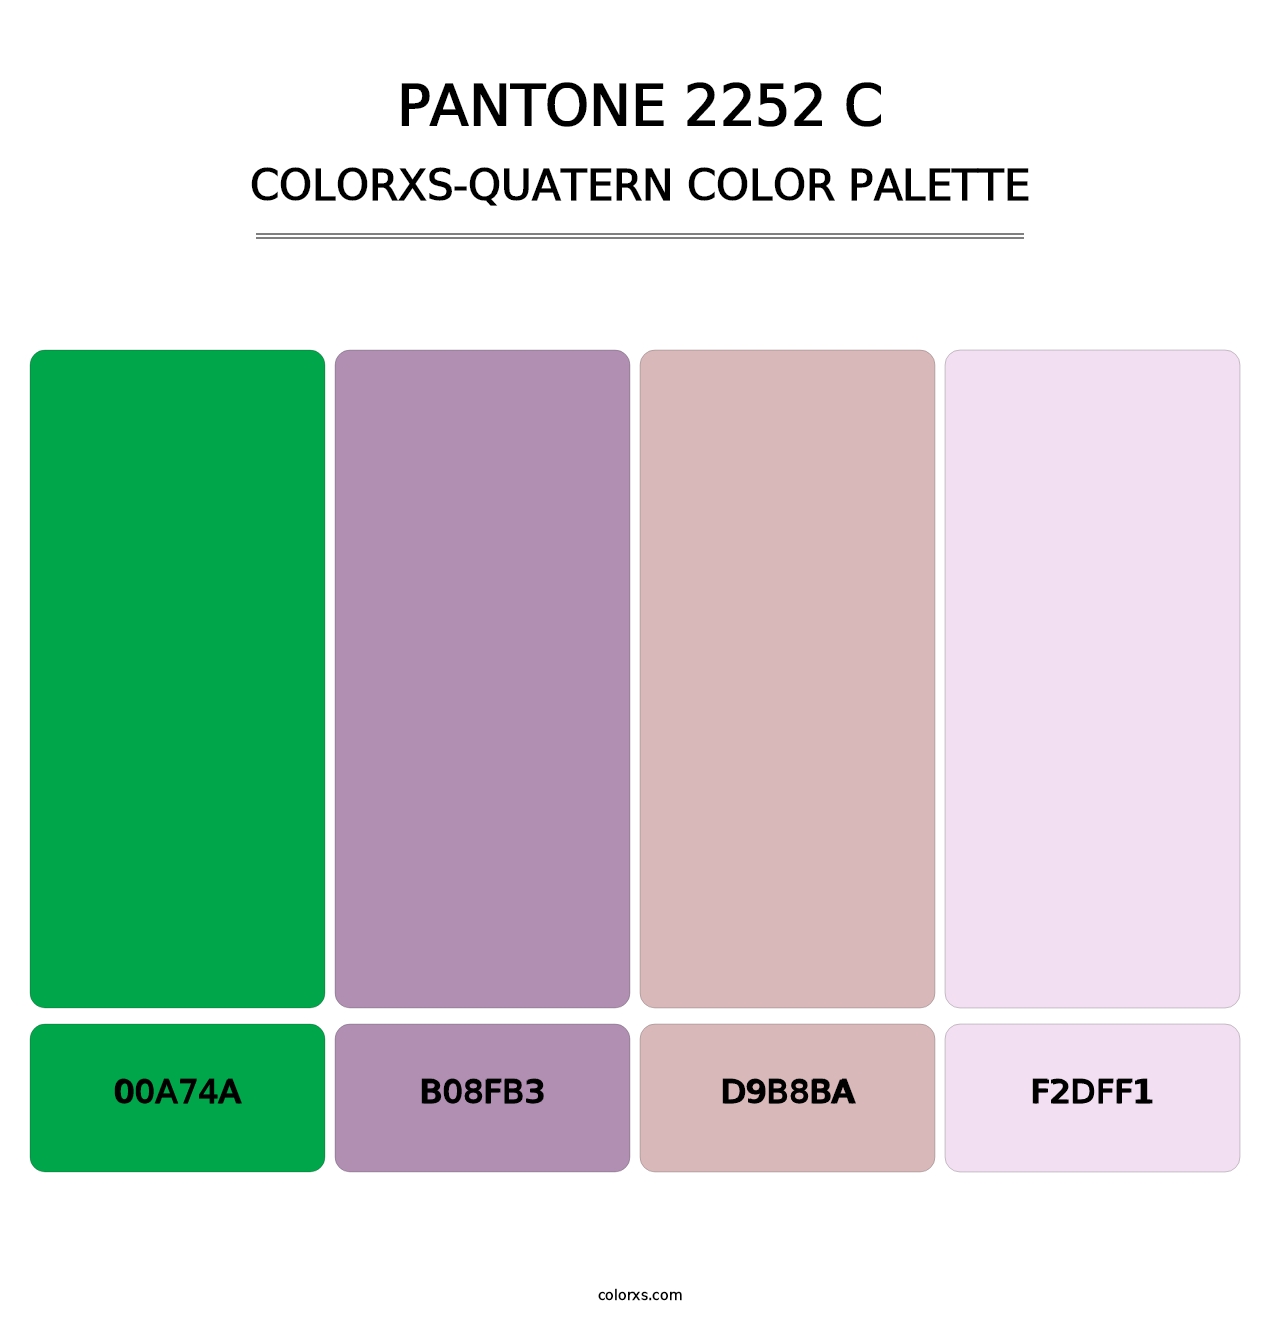 PANTONE 2252 C - Colorxs Quatern Palette